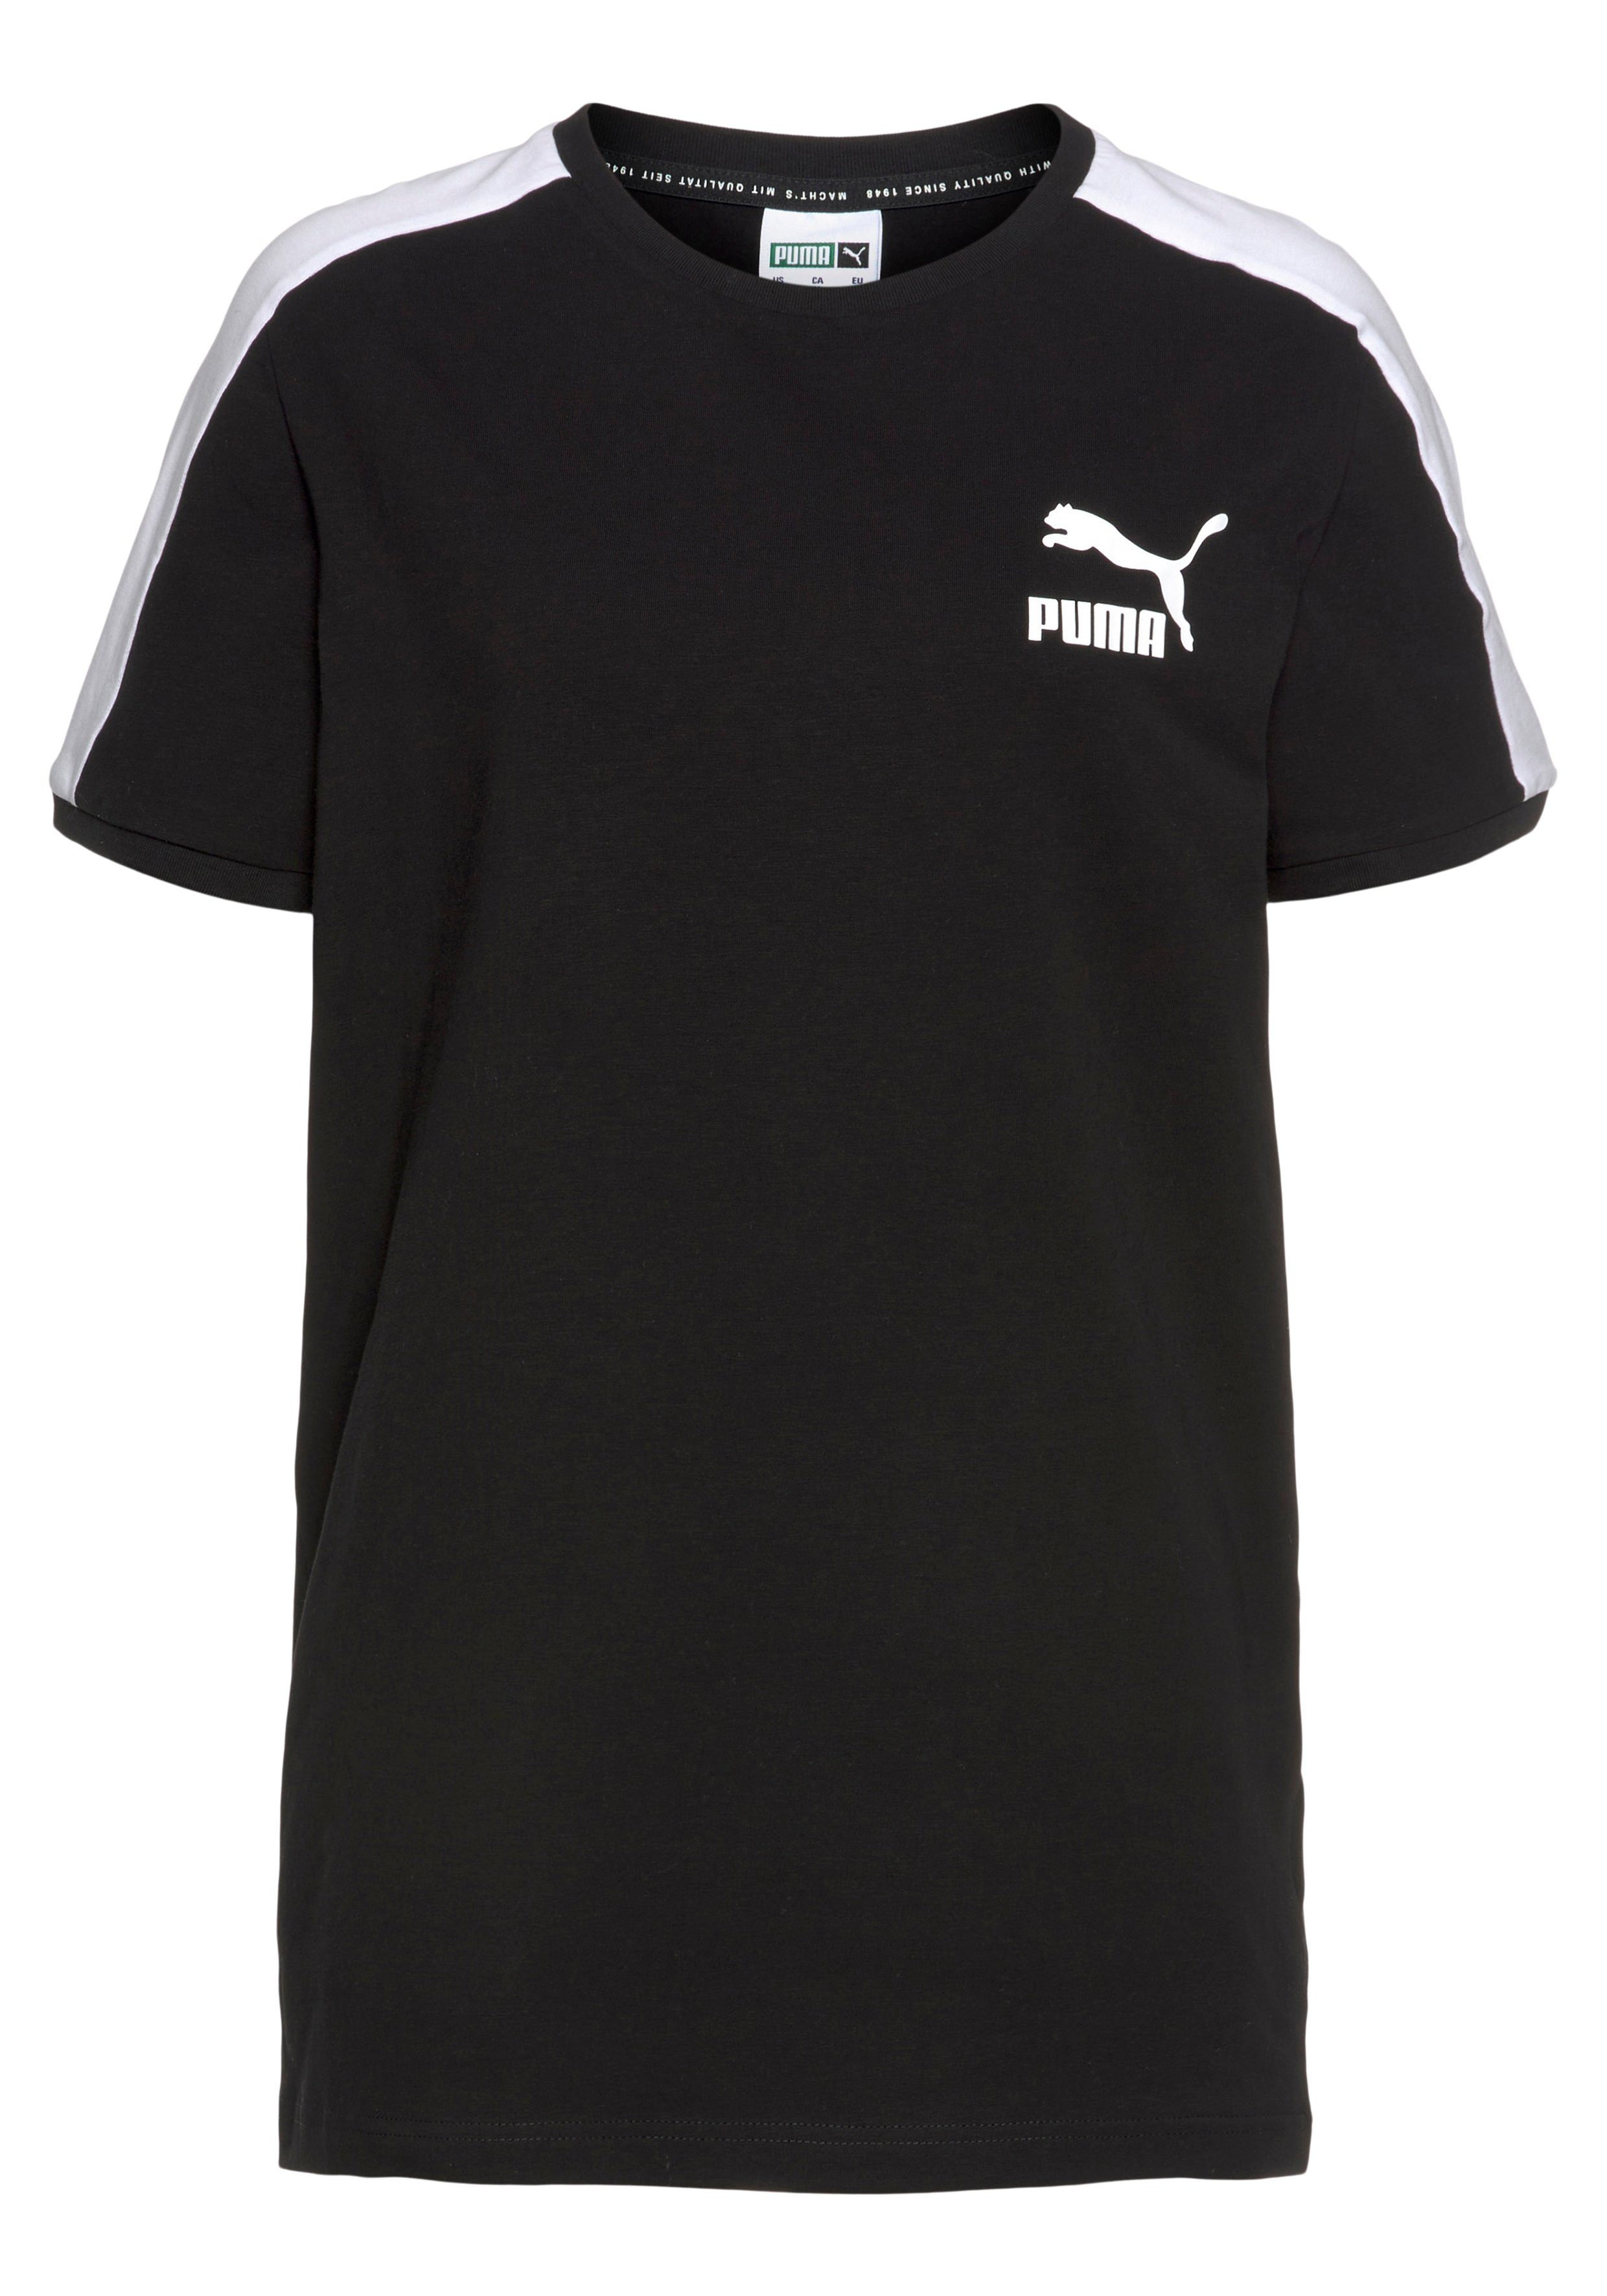 PUMA Herren T-Shirts online kaufen | OTTO